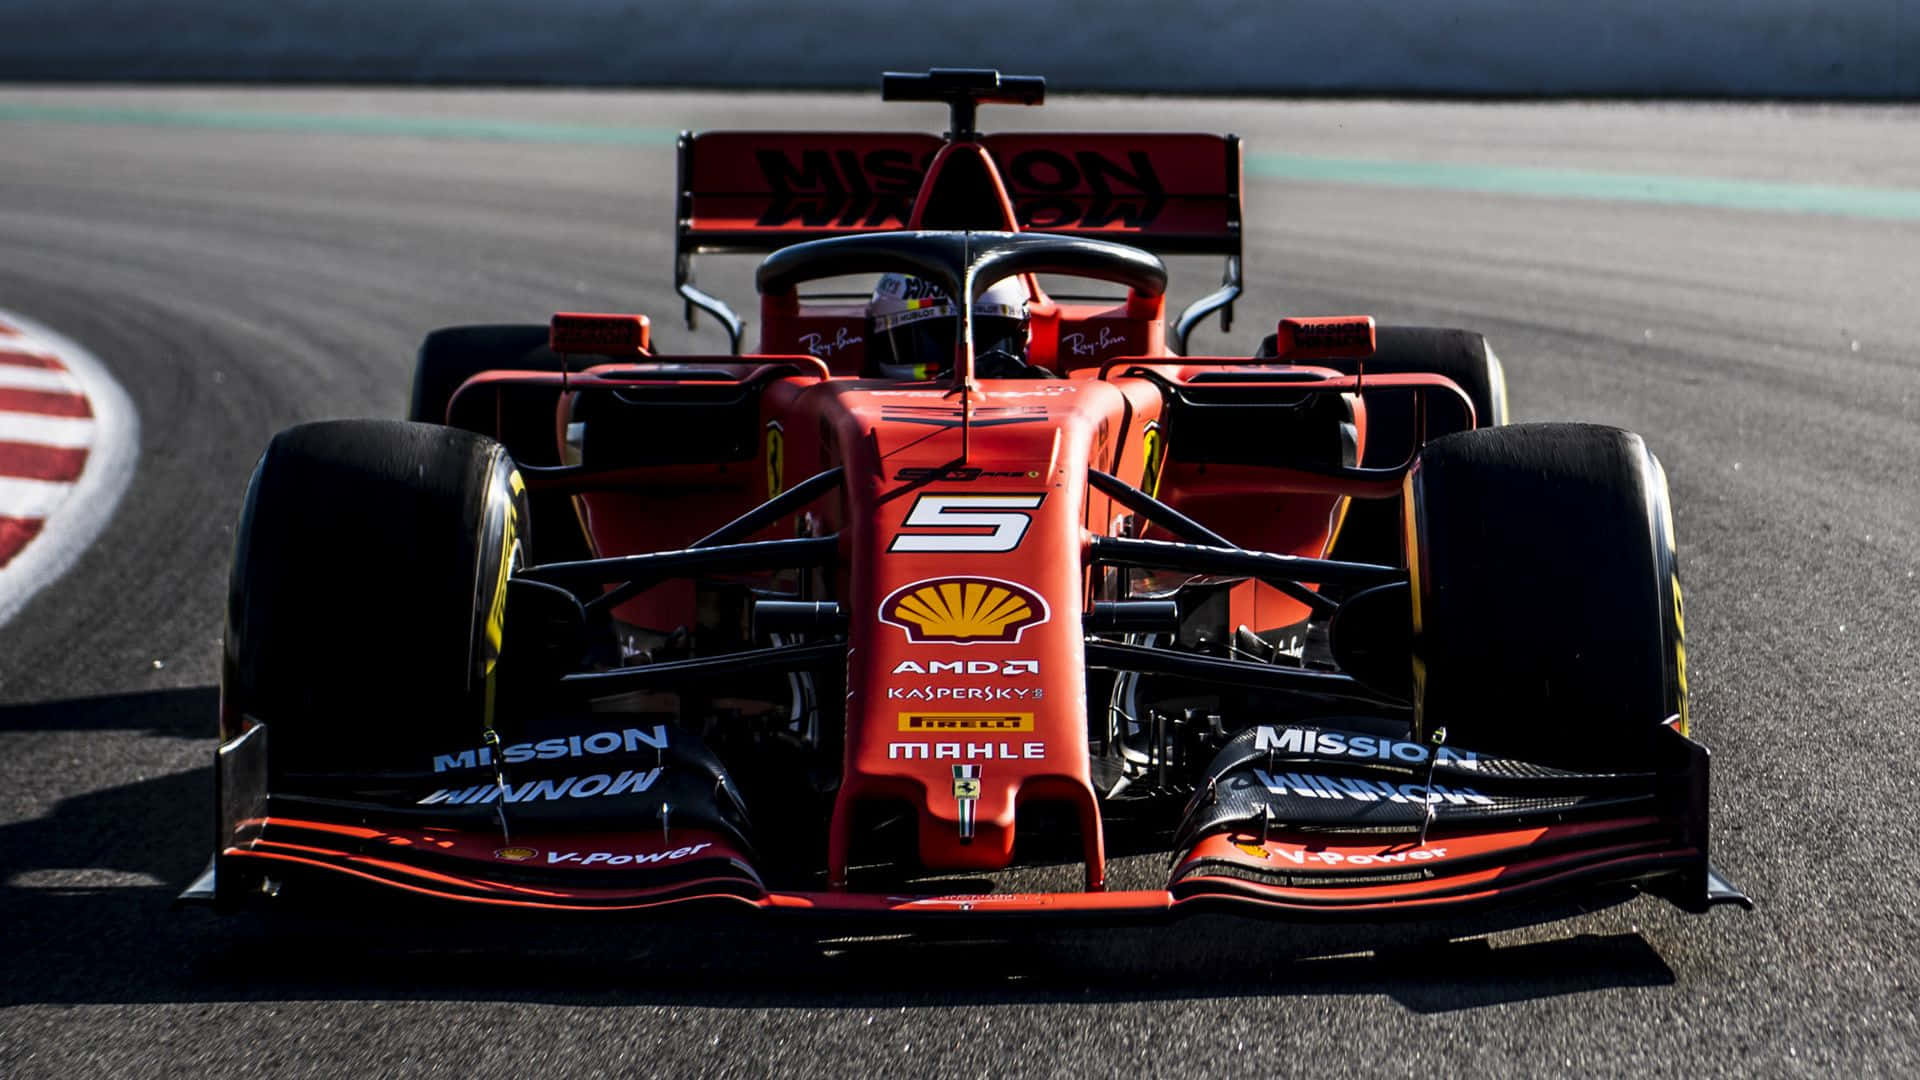 Ferrari-F1 2019 – A Racing Marvel Wallpaper